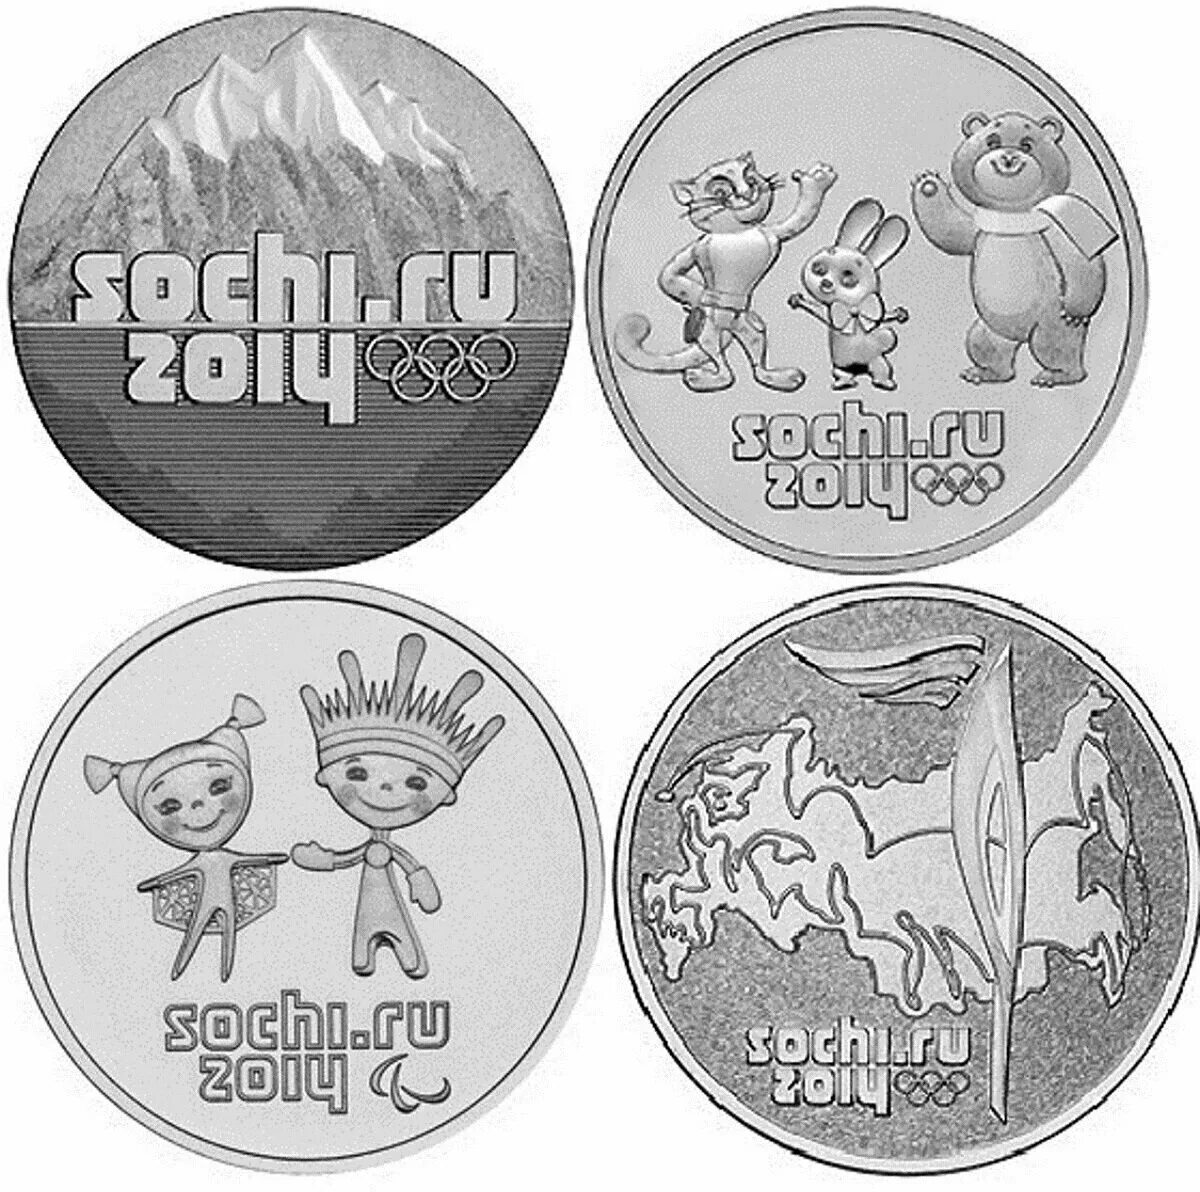 25 Рублей Олимпийские игры Сочи 2014. Монета сочи 2014 25 рублей цена сколько